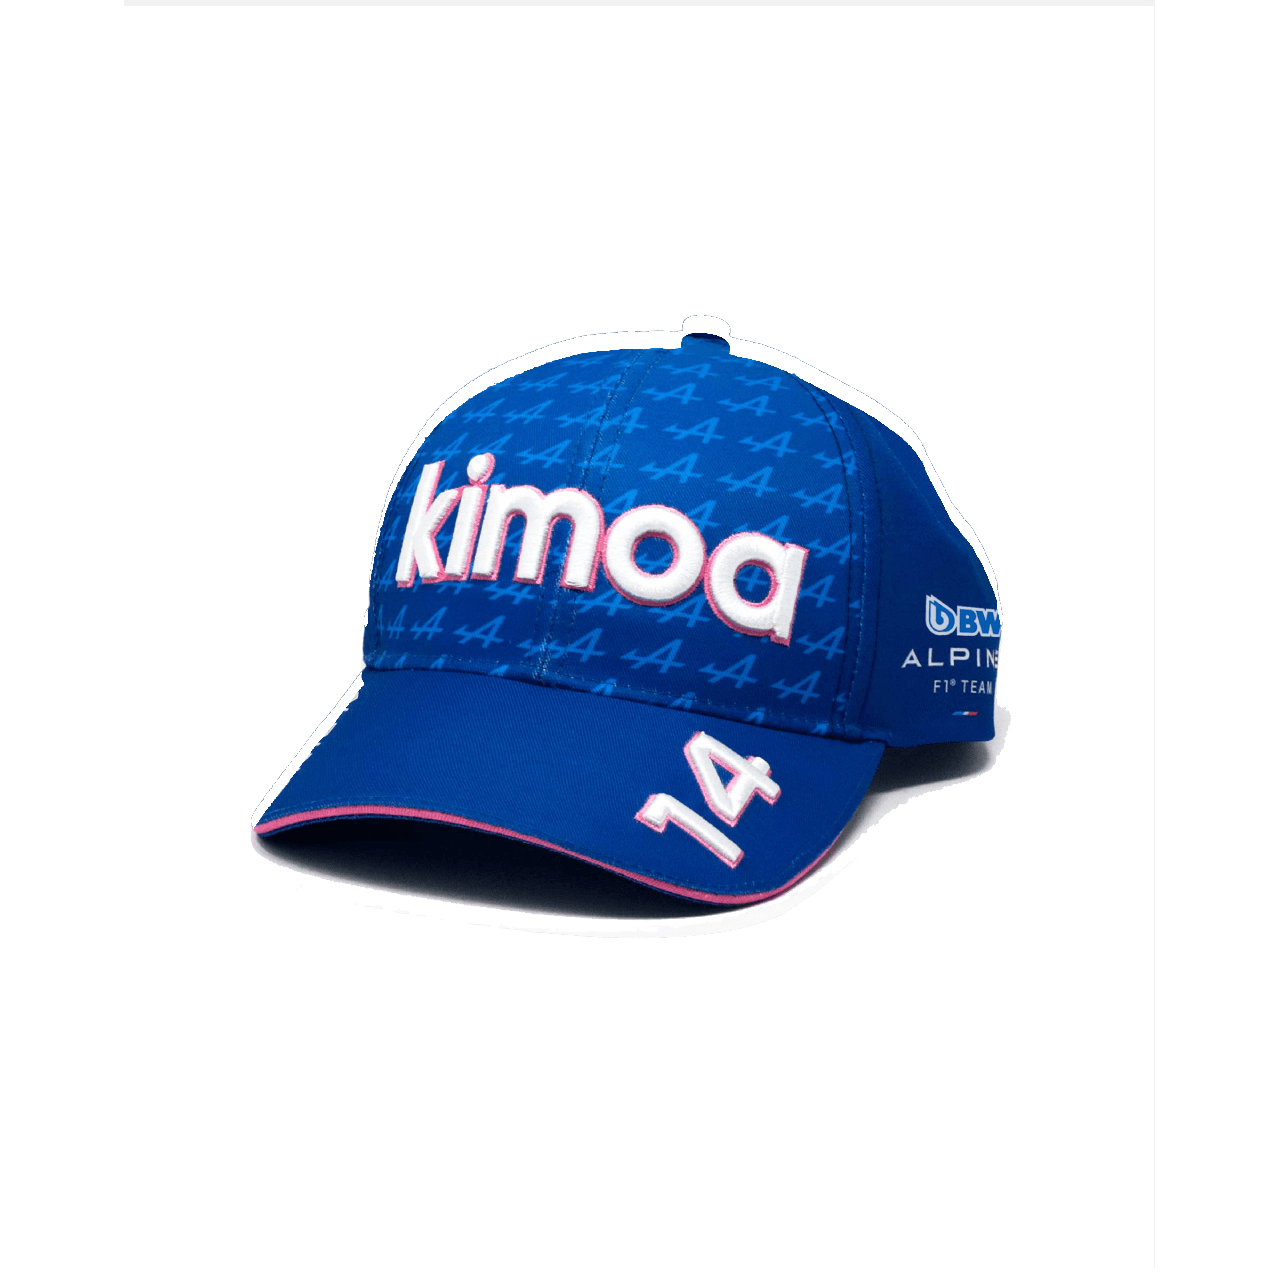 Kimoa BWT ALPINE F1 Snappack Kappe blau mit weißen und pinken Elementen